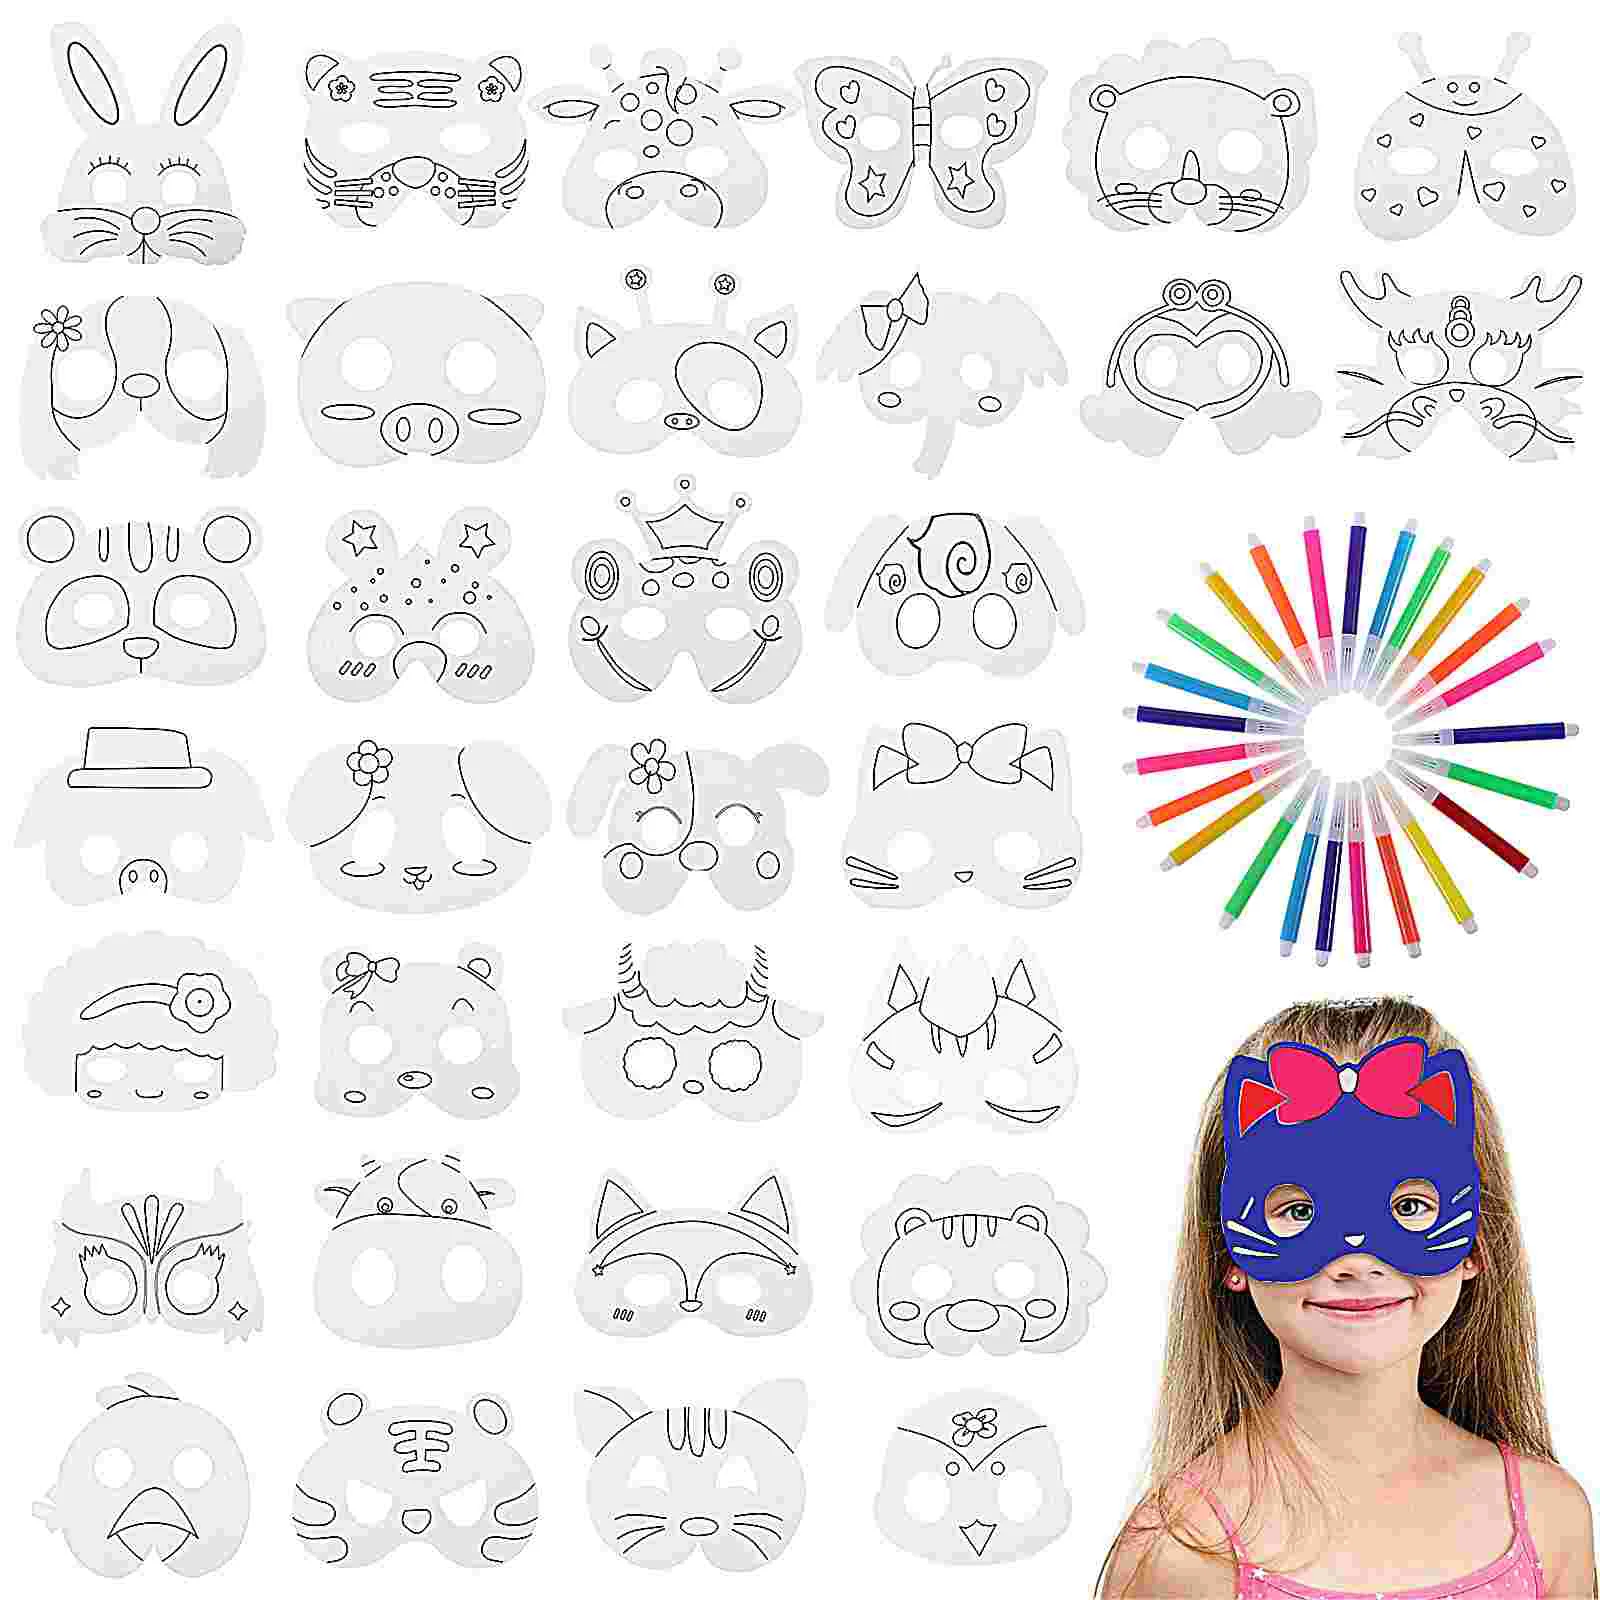 

1 Набор пустых масок, маска для творчества «сделай сам», маски для животных, цветные маски для искусственных маскарада, костюмированных искусств